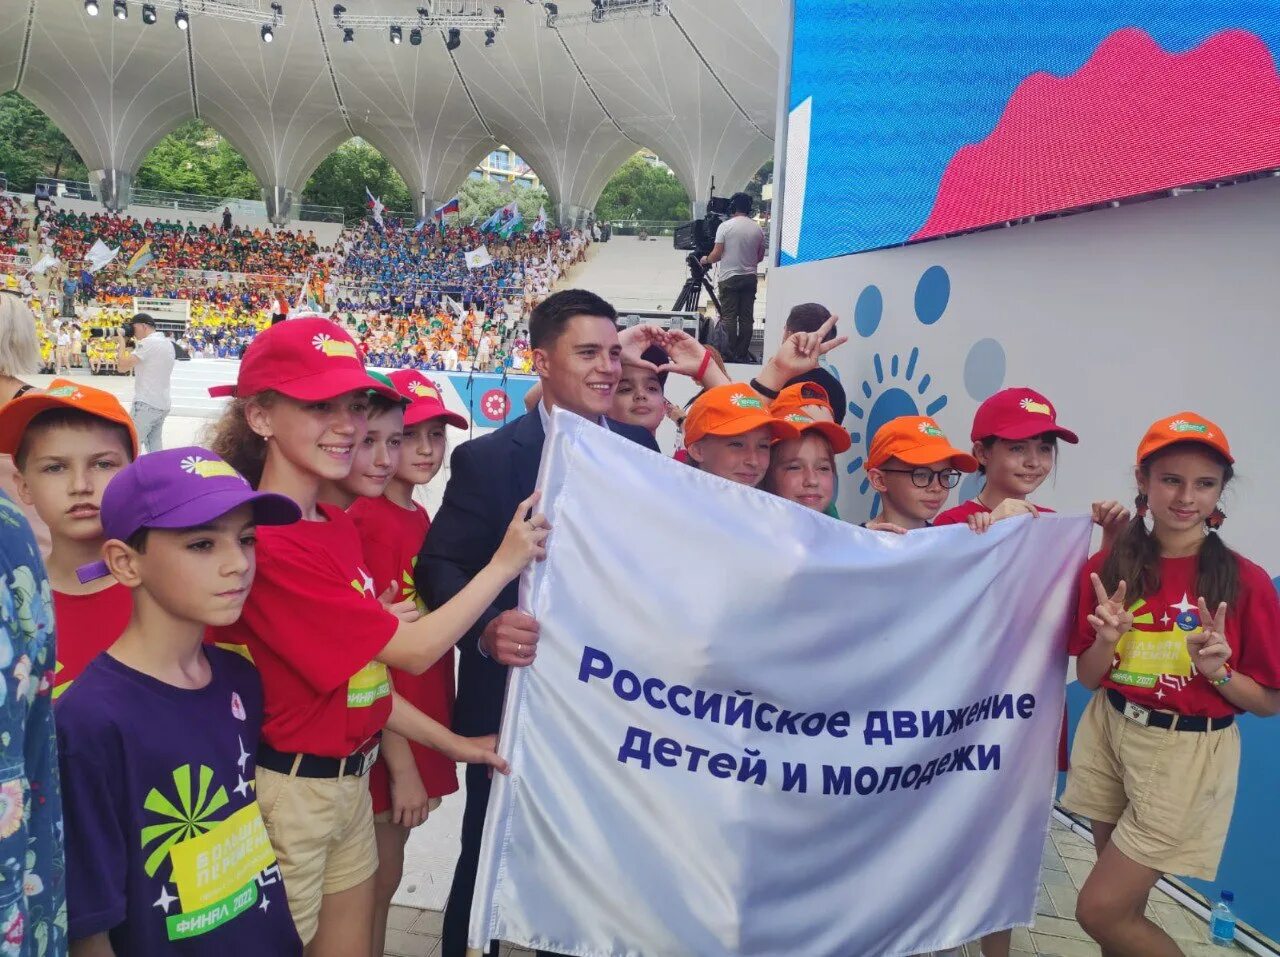 Российское движение детей и молодежи. Молодежные объединения. Россицское движение детей и молодёжи. Российское движение детей.